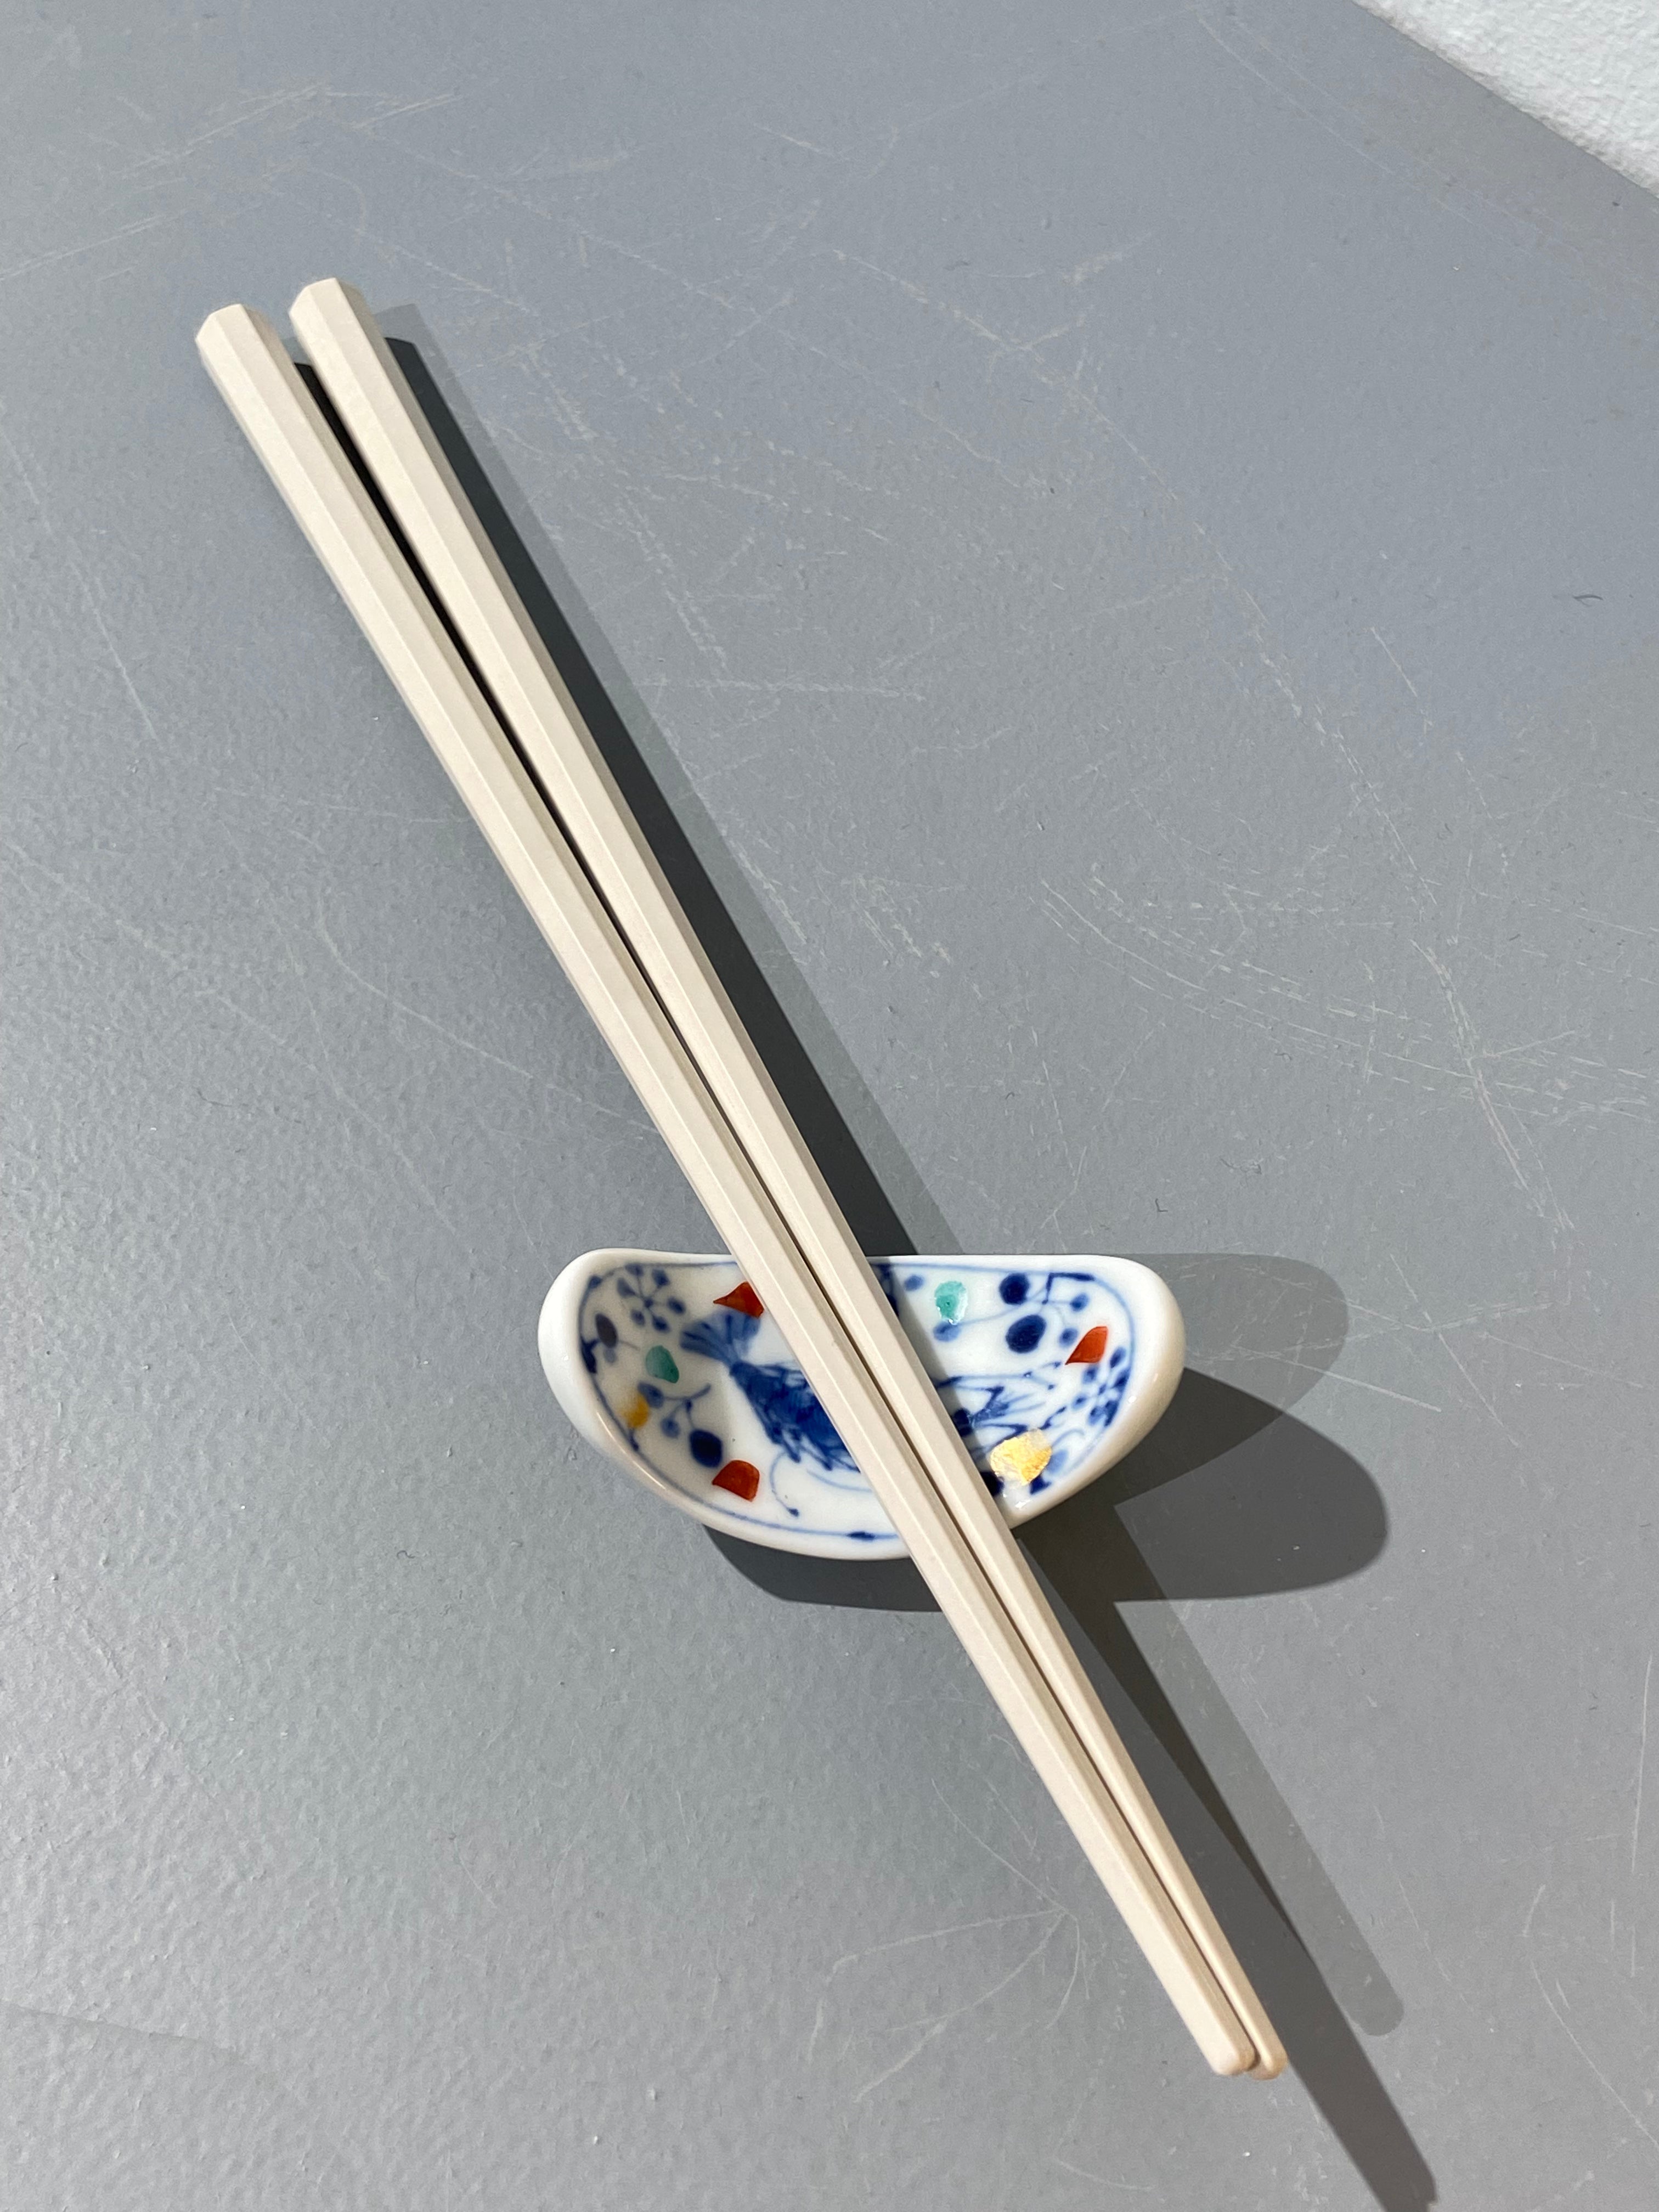 Chopstick holder: Japanese motif with shrimp